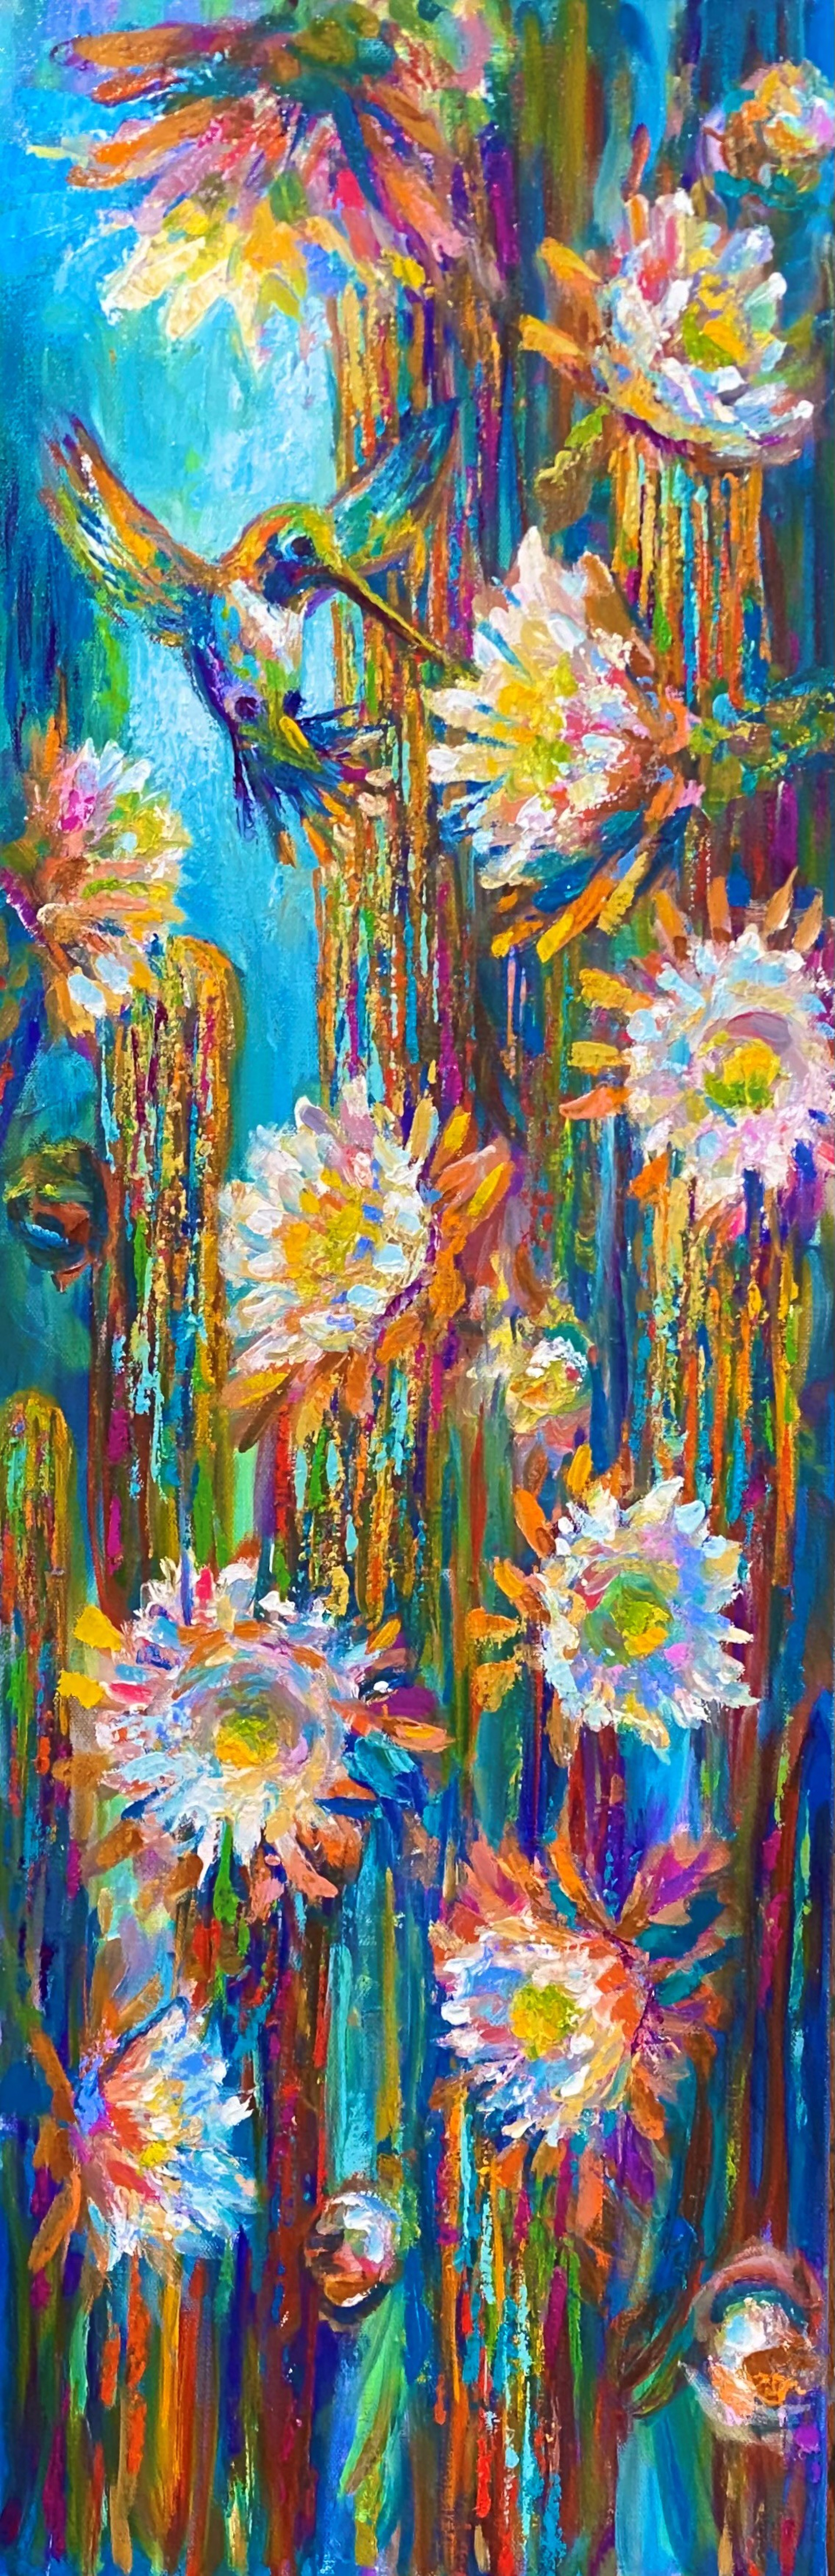 Blooms at Dusk by Barbara Meikle